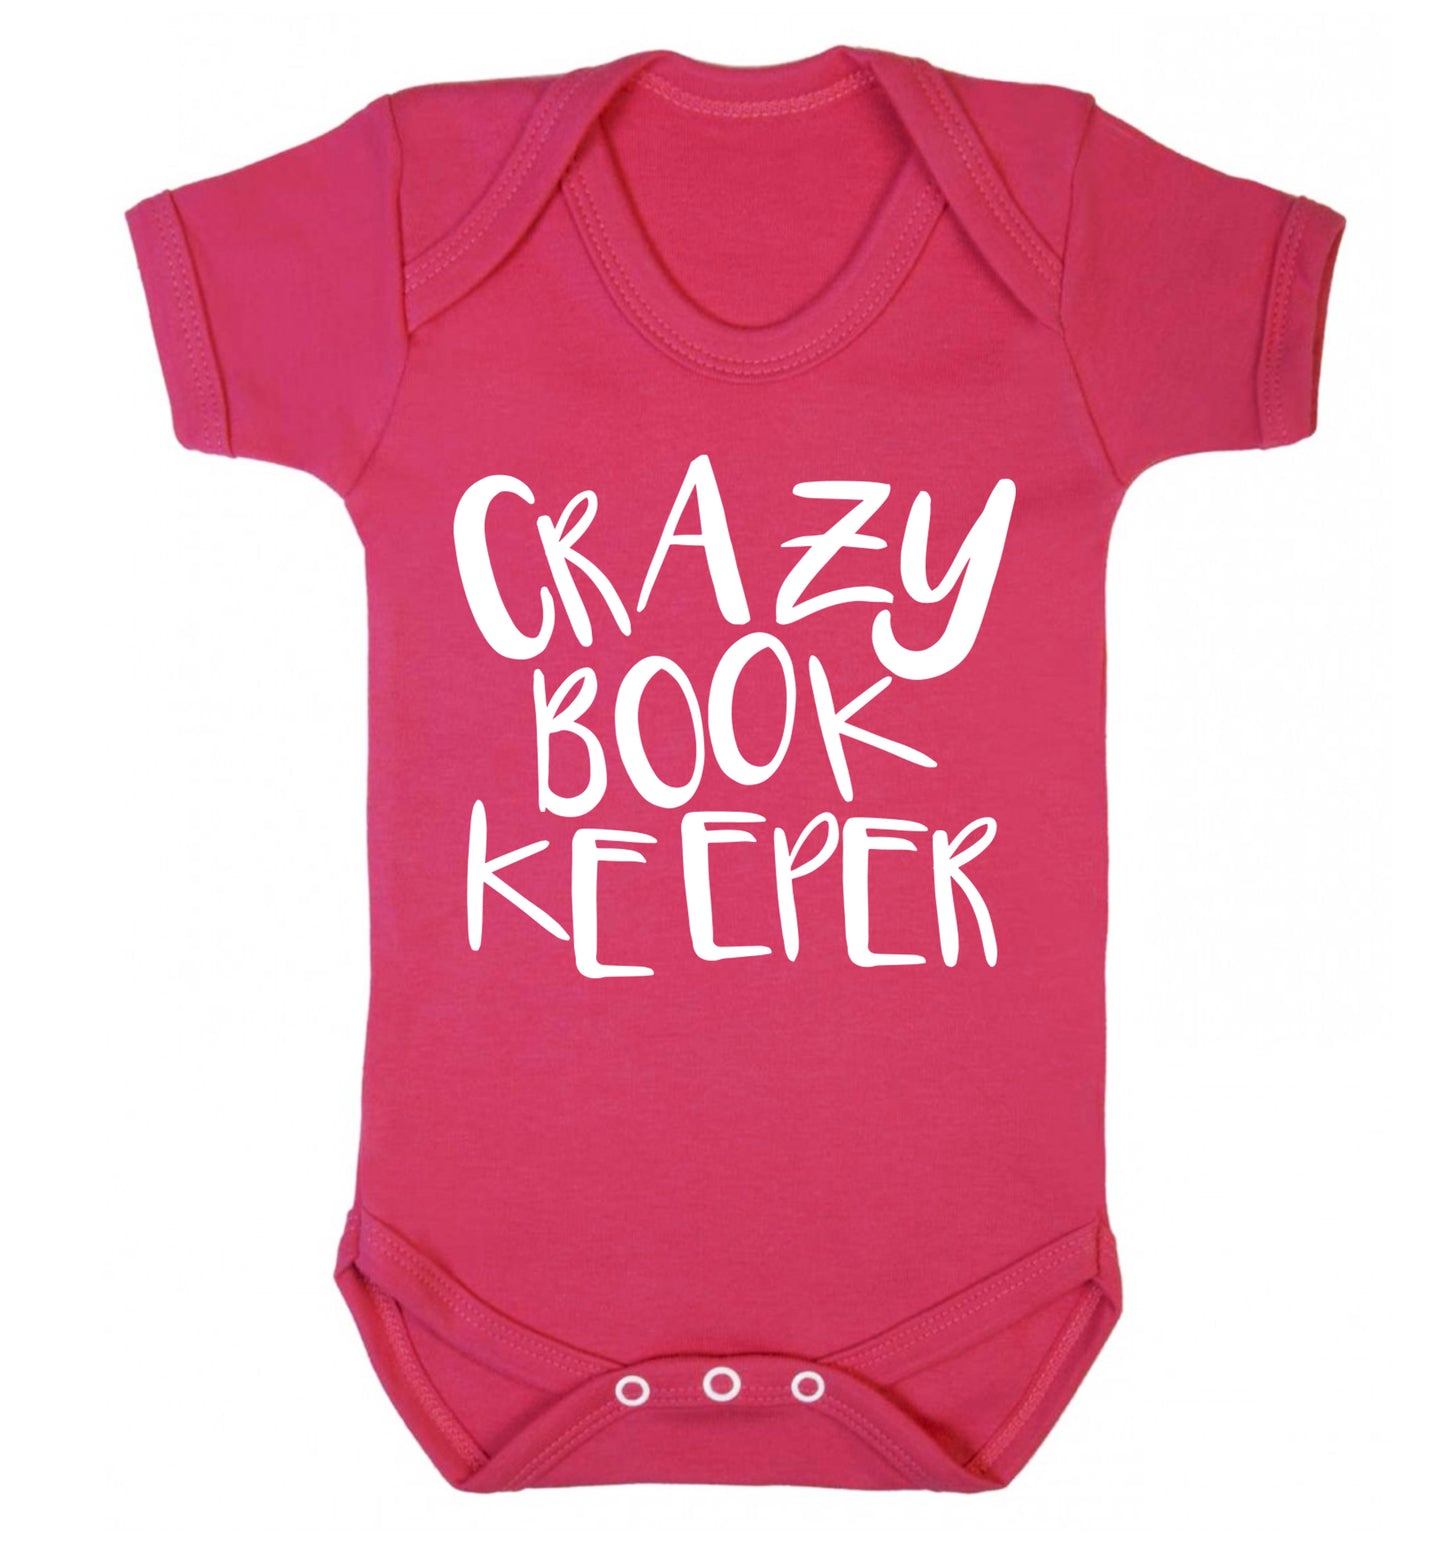 Crazy bookkeeper Baby Vest dark pink 18-24 months